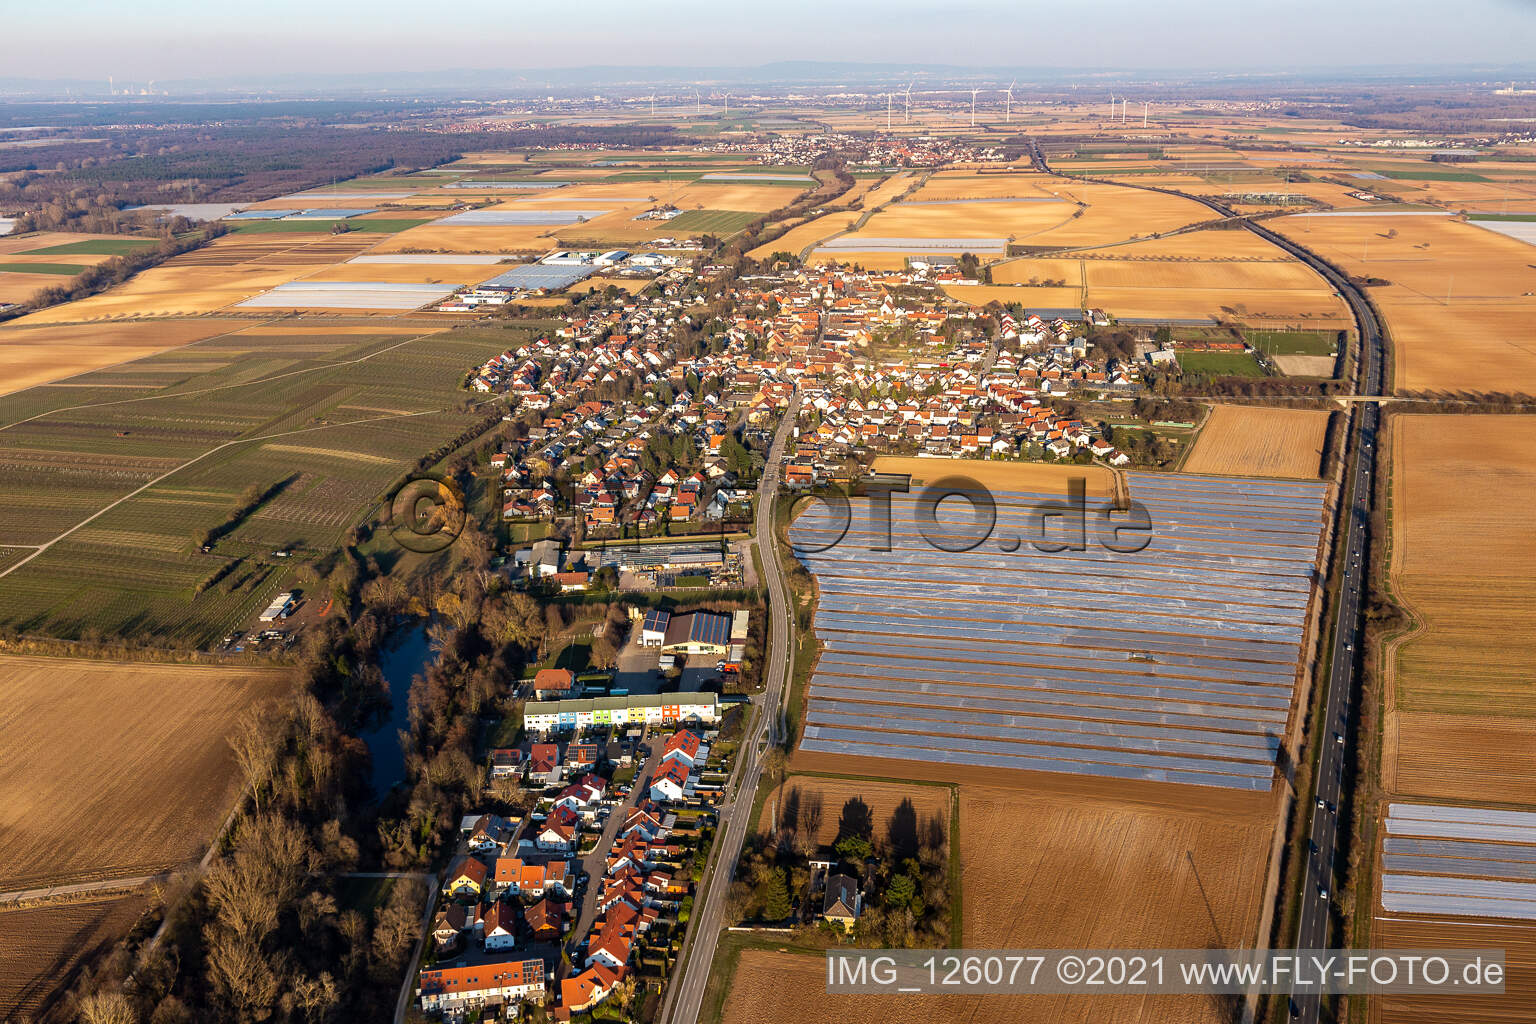 Vue aérienne de (Palatinat) à Weingarten dans le département Rhénanie-Palatinat, Allemagne